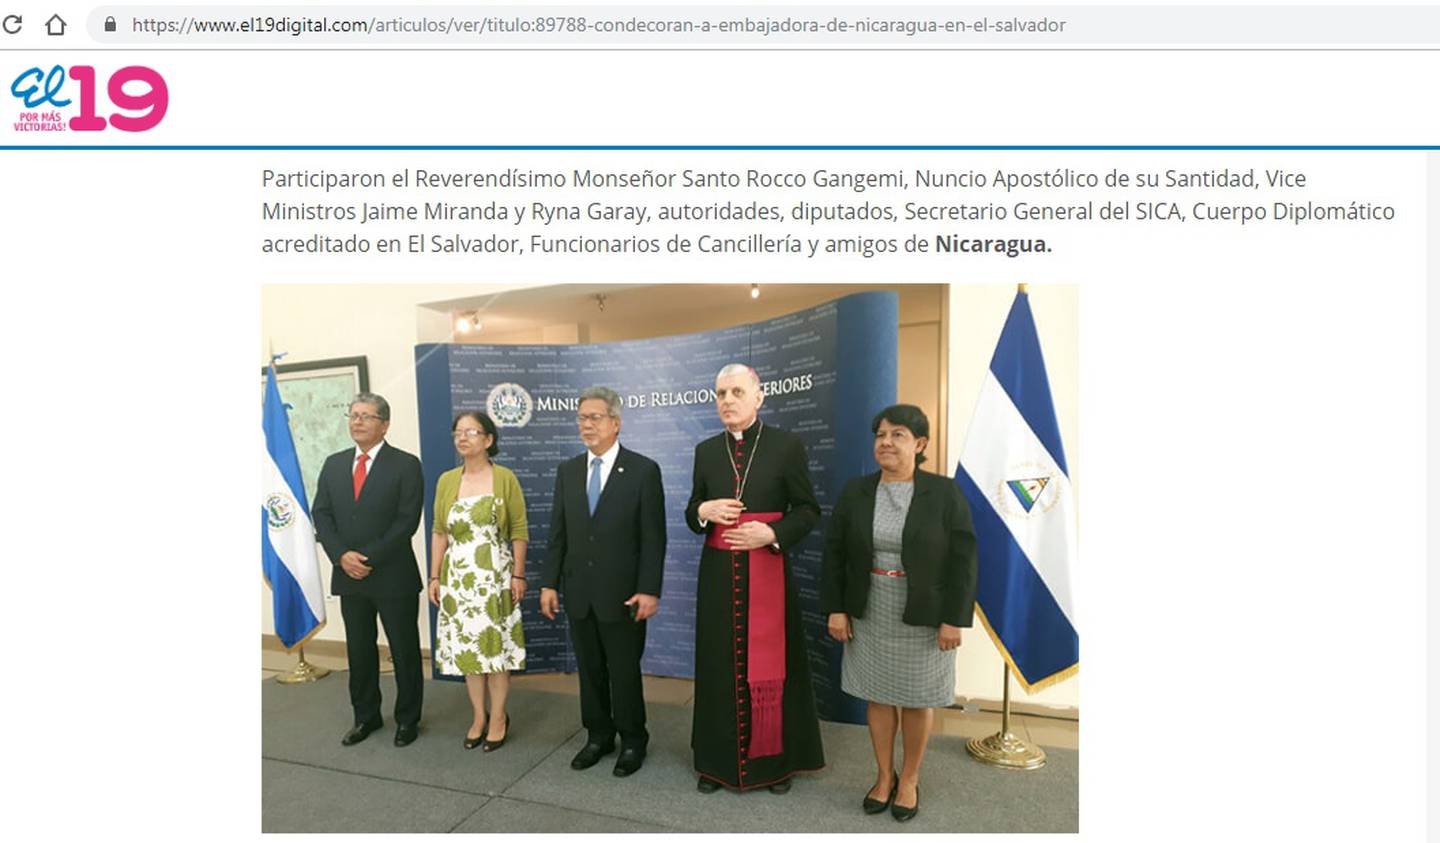 Gilda Bolt González fue condecorada el 3 de mayo por la cancillería de El Salvador, al concluir sus funciones como embajadora en ese país. La información fue divulgada por El 19 Digital, uno de los medios oficialistas en Nicaragua. Foto: captura de pantalla.